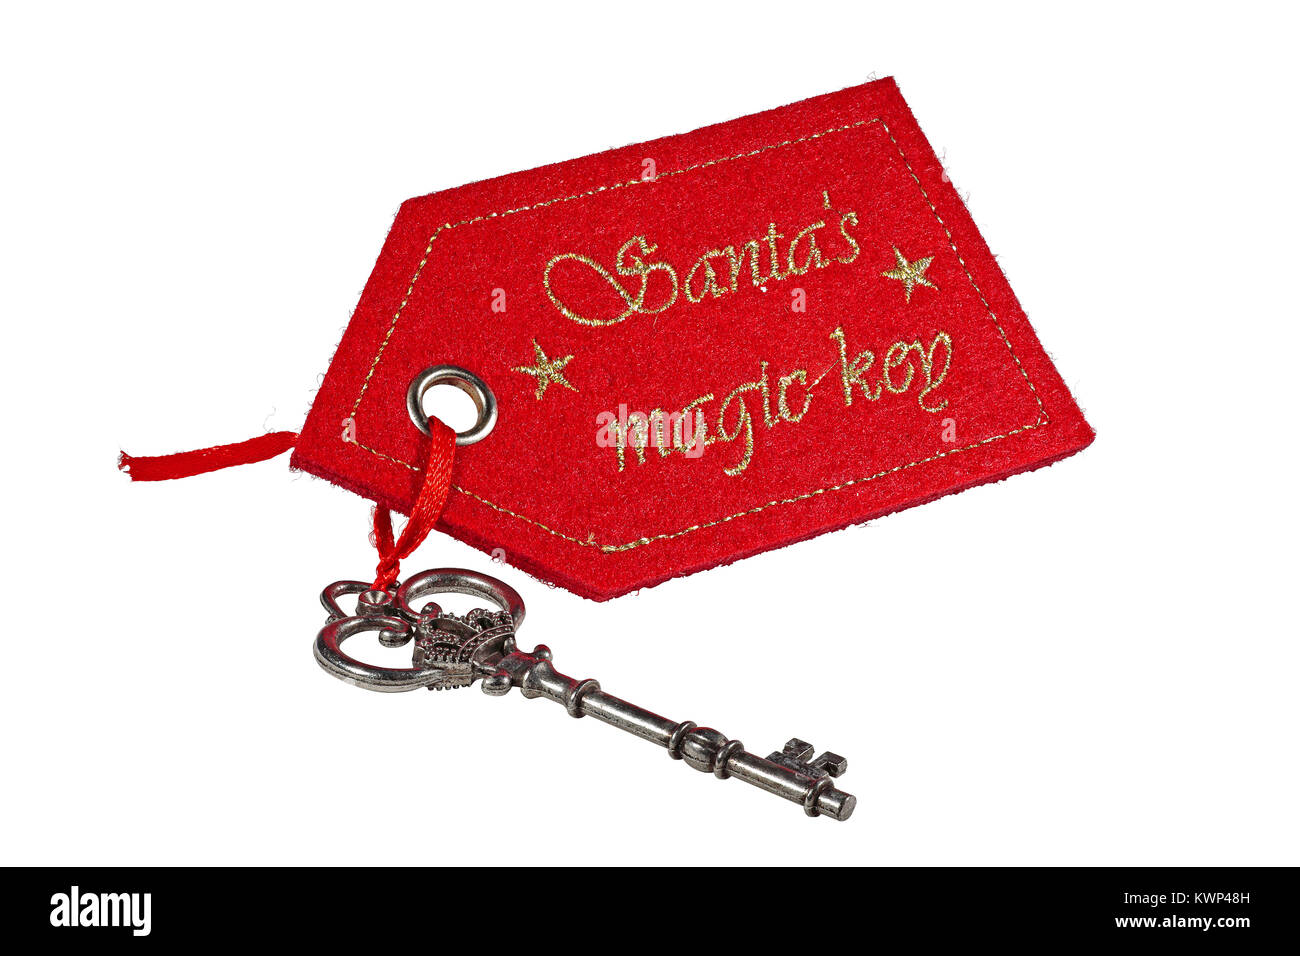 Santas Magic Key isolé sur fond blanc Banque D'Images